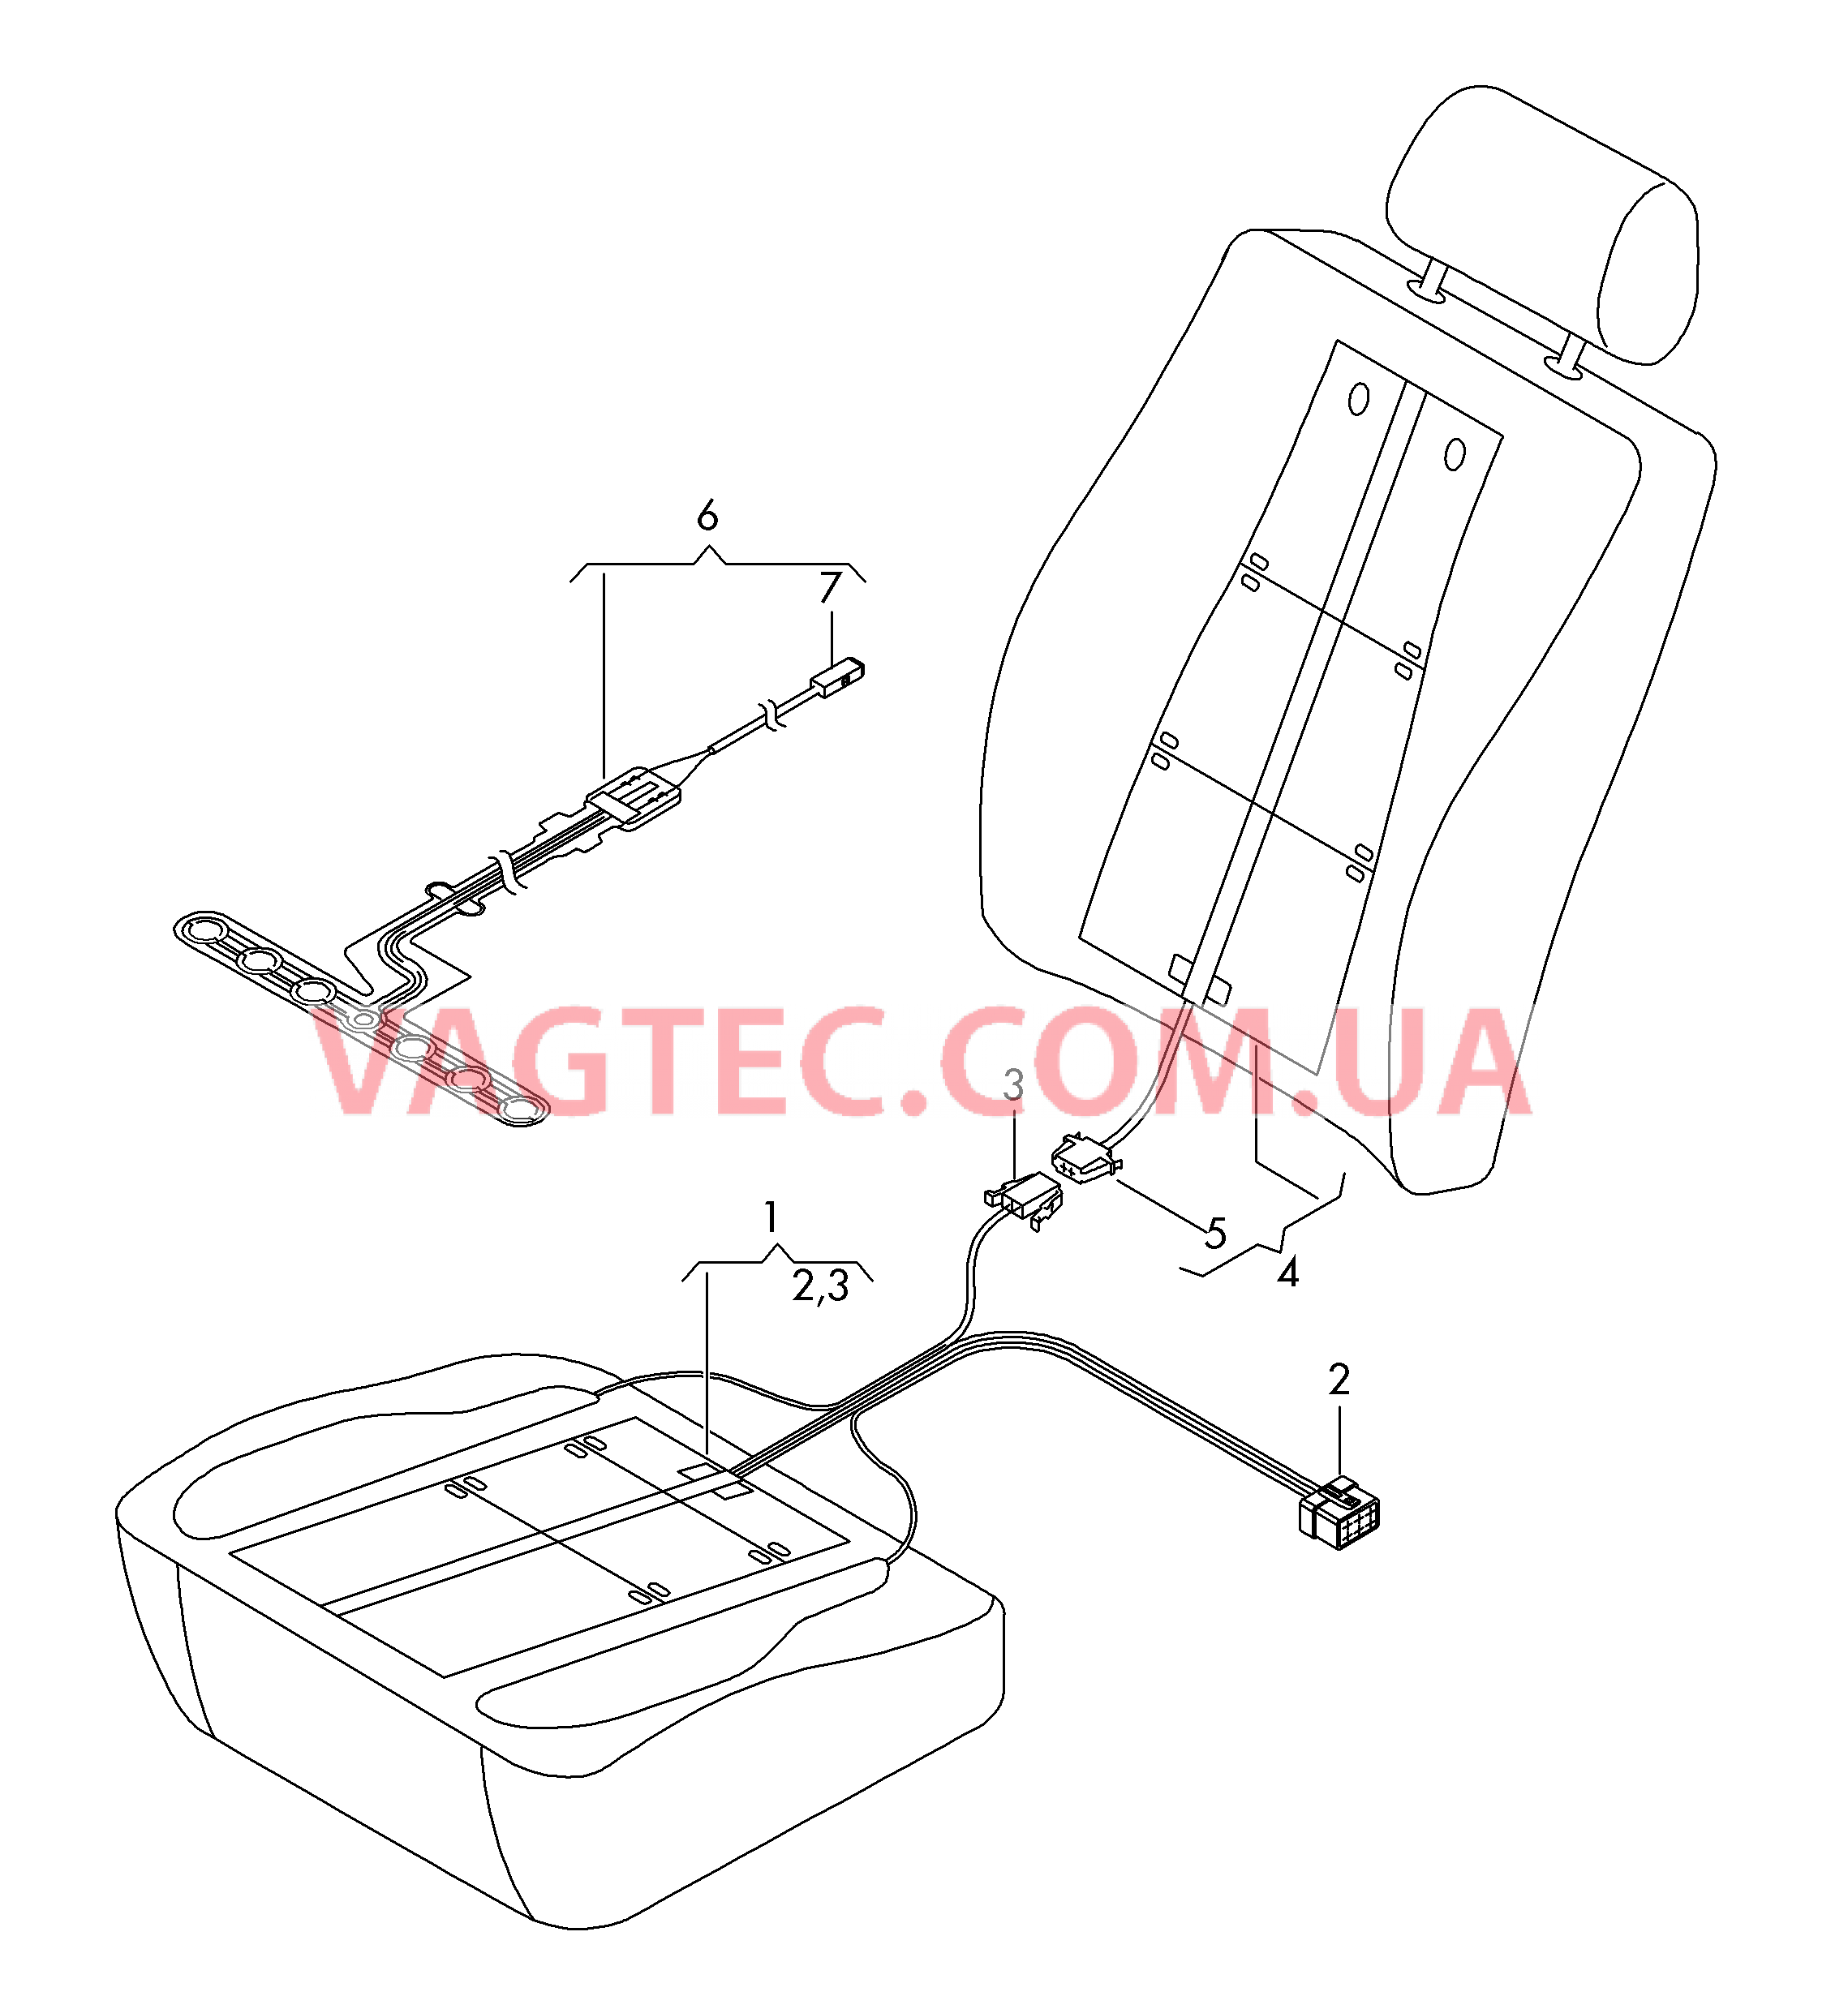 Нагревательный элемент спинки и подушки сиденья  Вставка распознавания занятости сиденья  для SEAT Leon 2017